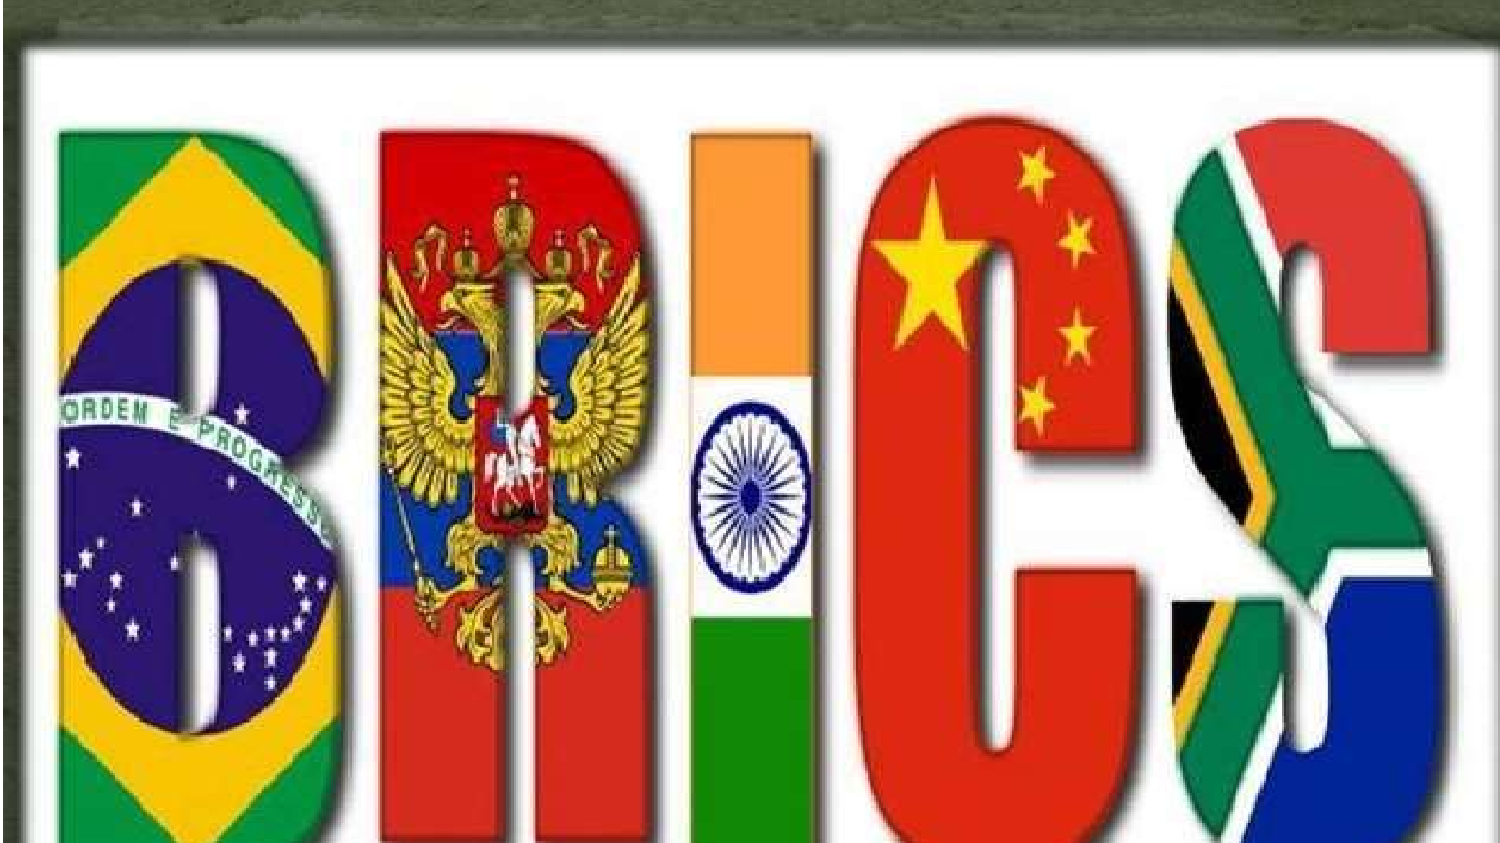 ब्रिक्स देशों के शिखर सम्मेलन की मेजबानी को भारत तैयार, चीन व रूस भी होंगे शामिल, जानें क्‍या है BRICS